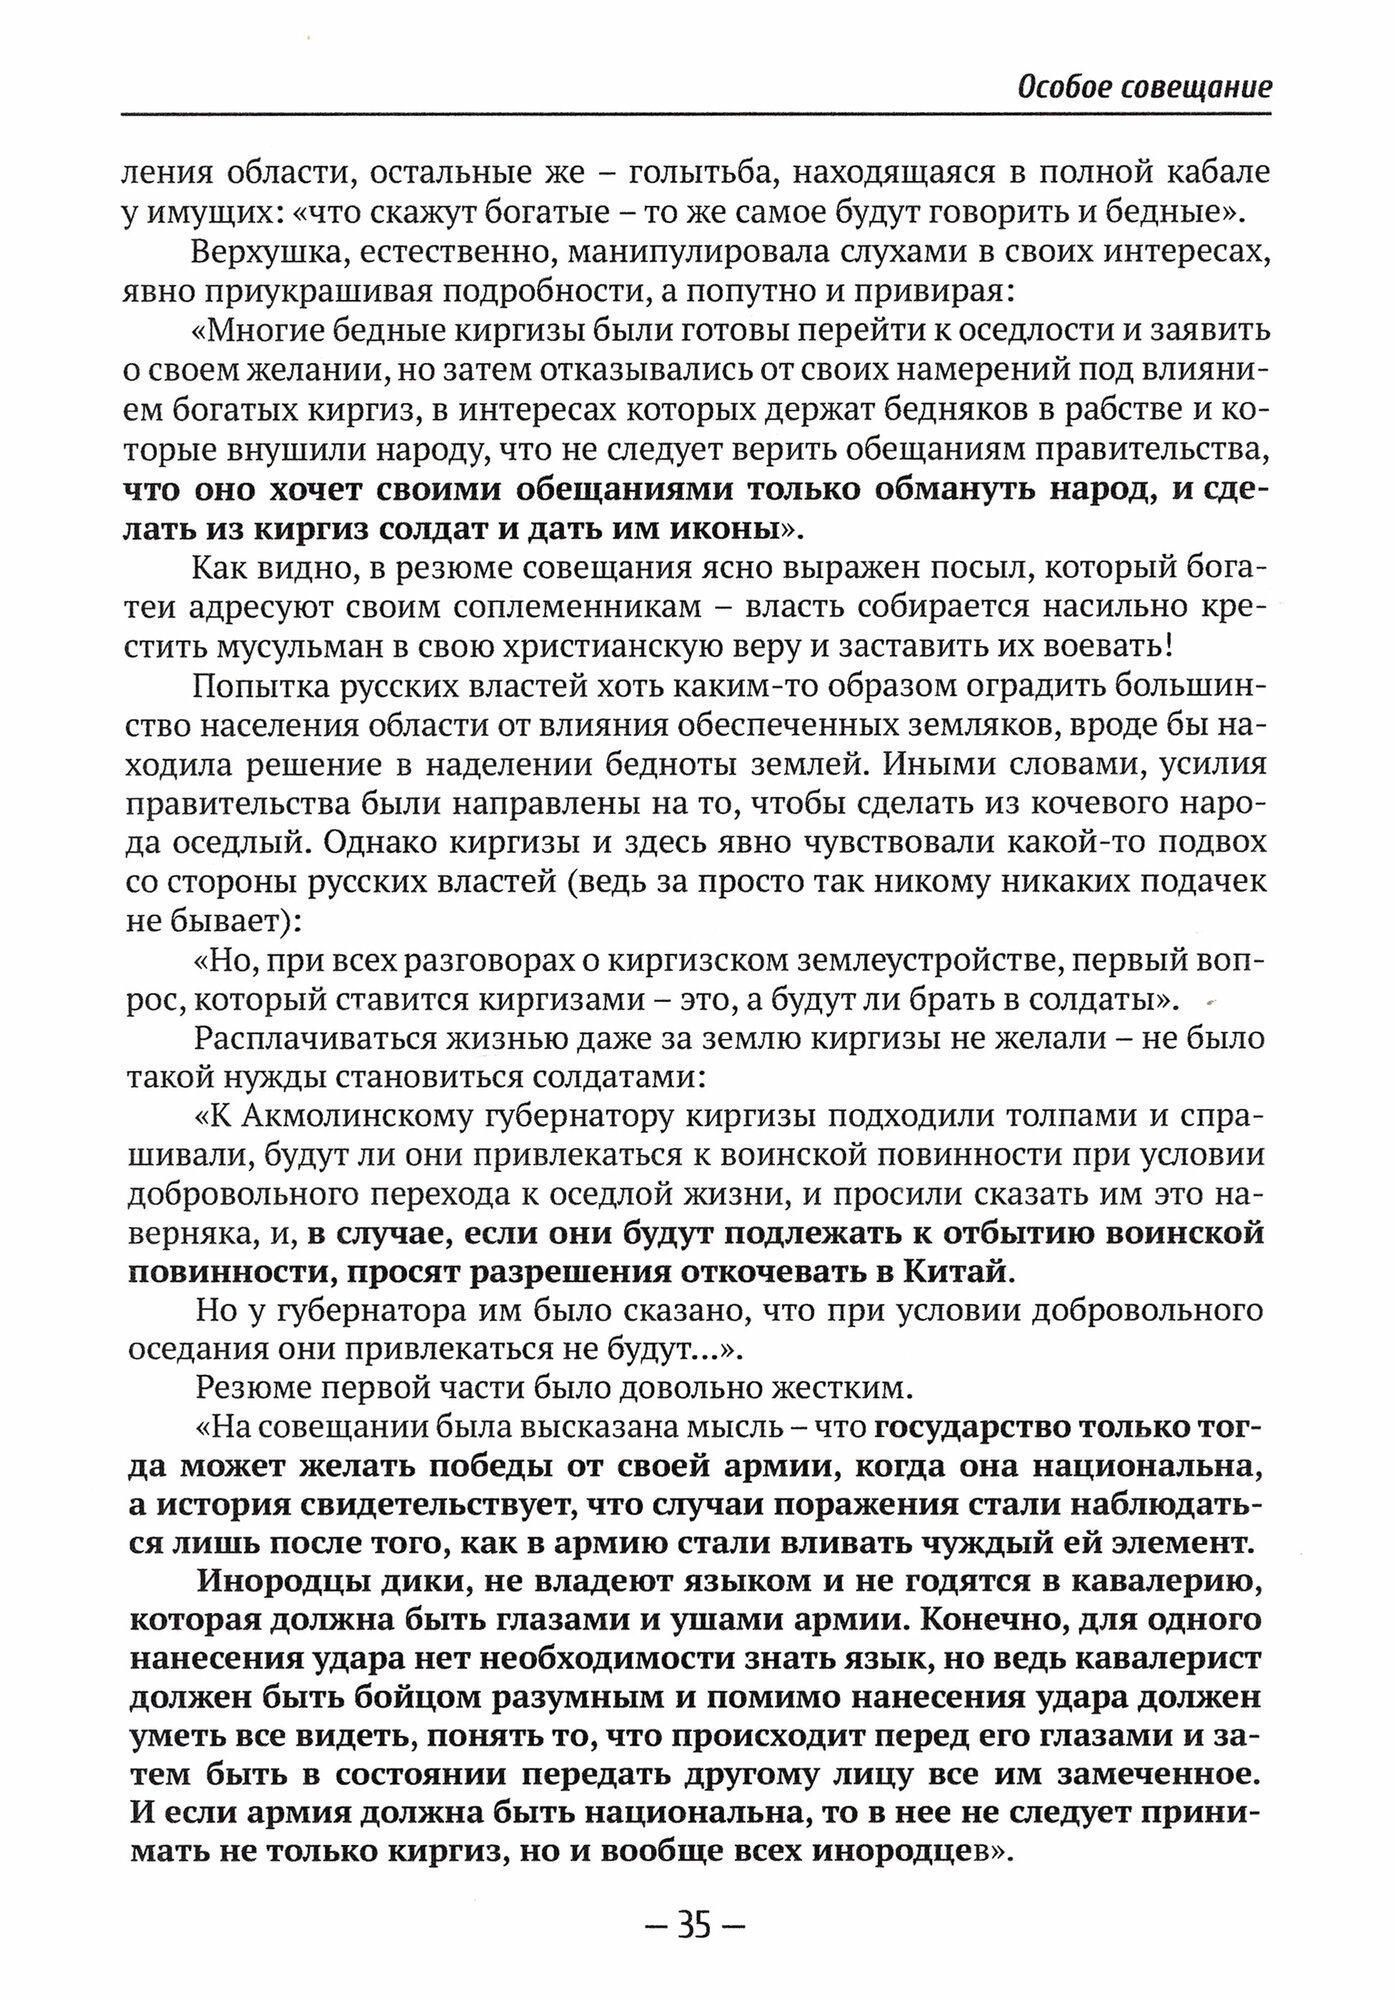 Русская армия как зеркало национальных противоречий. Книга 2 - фото №5